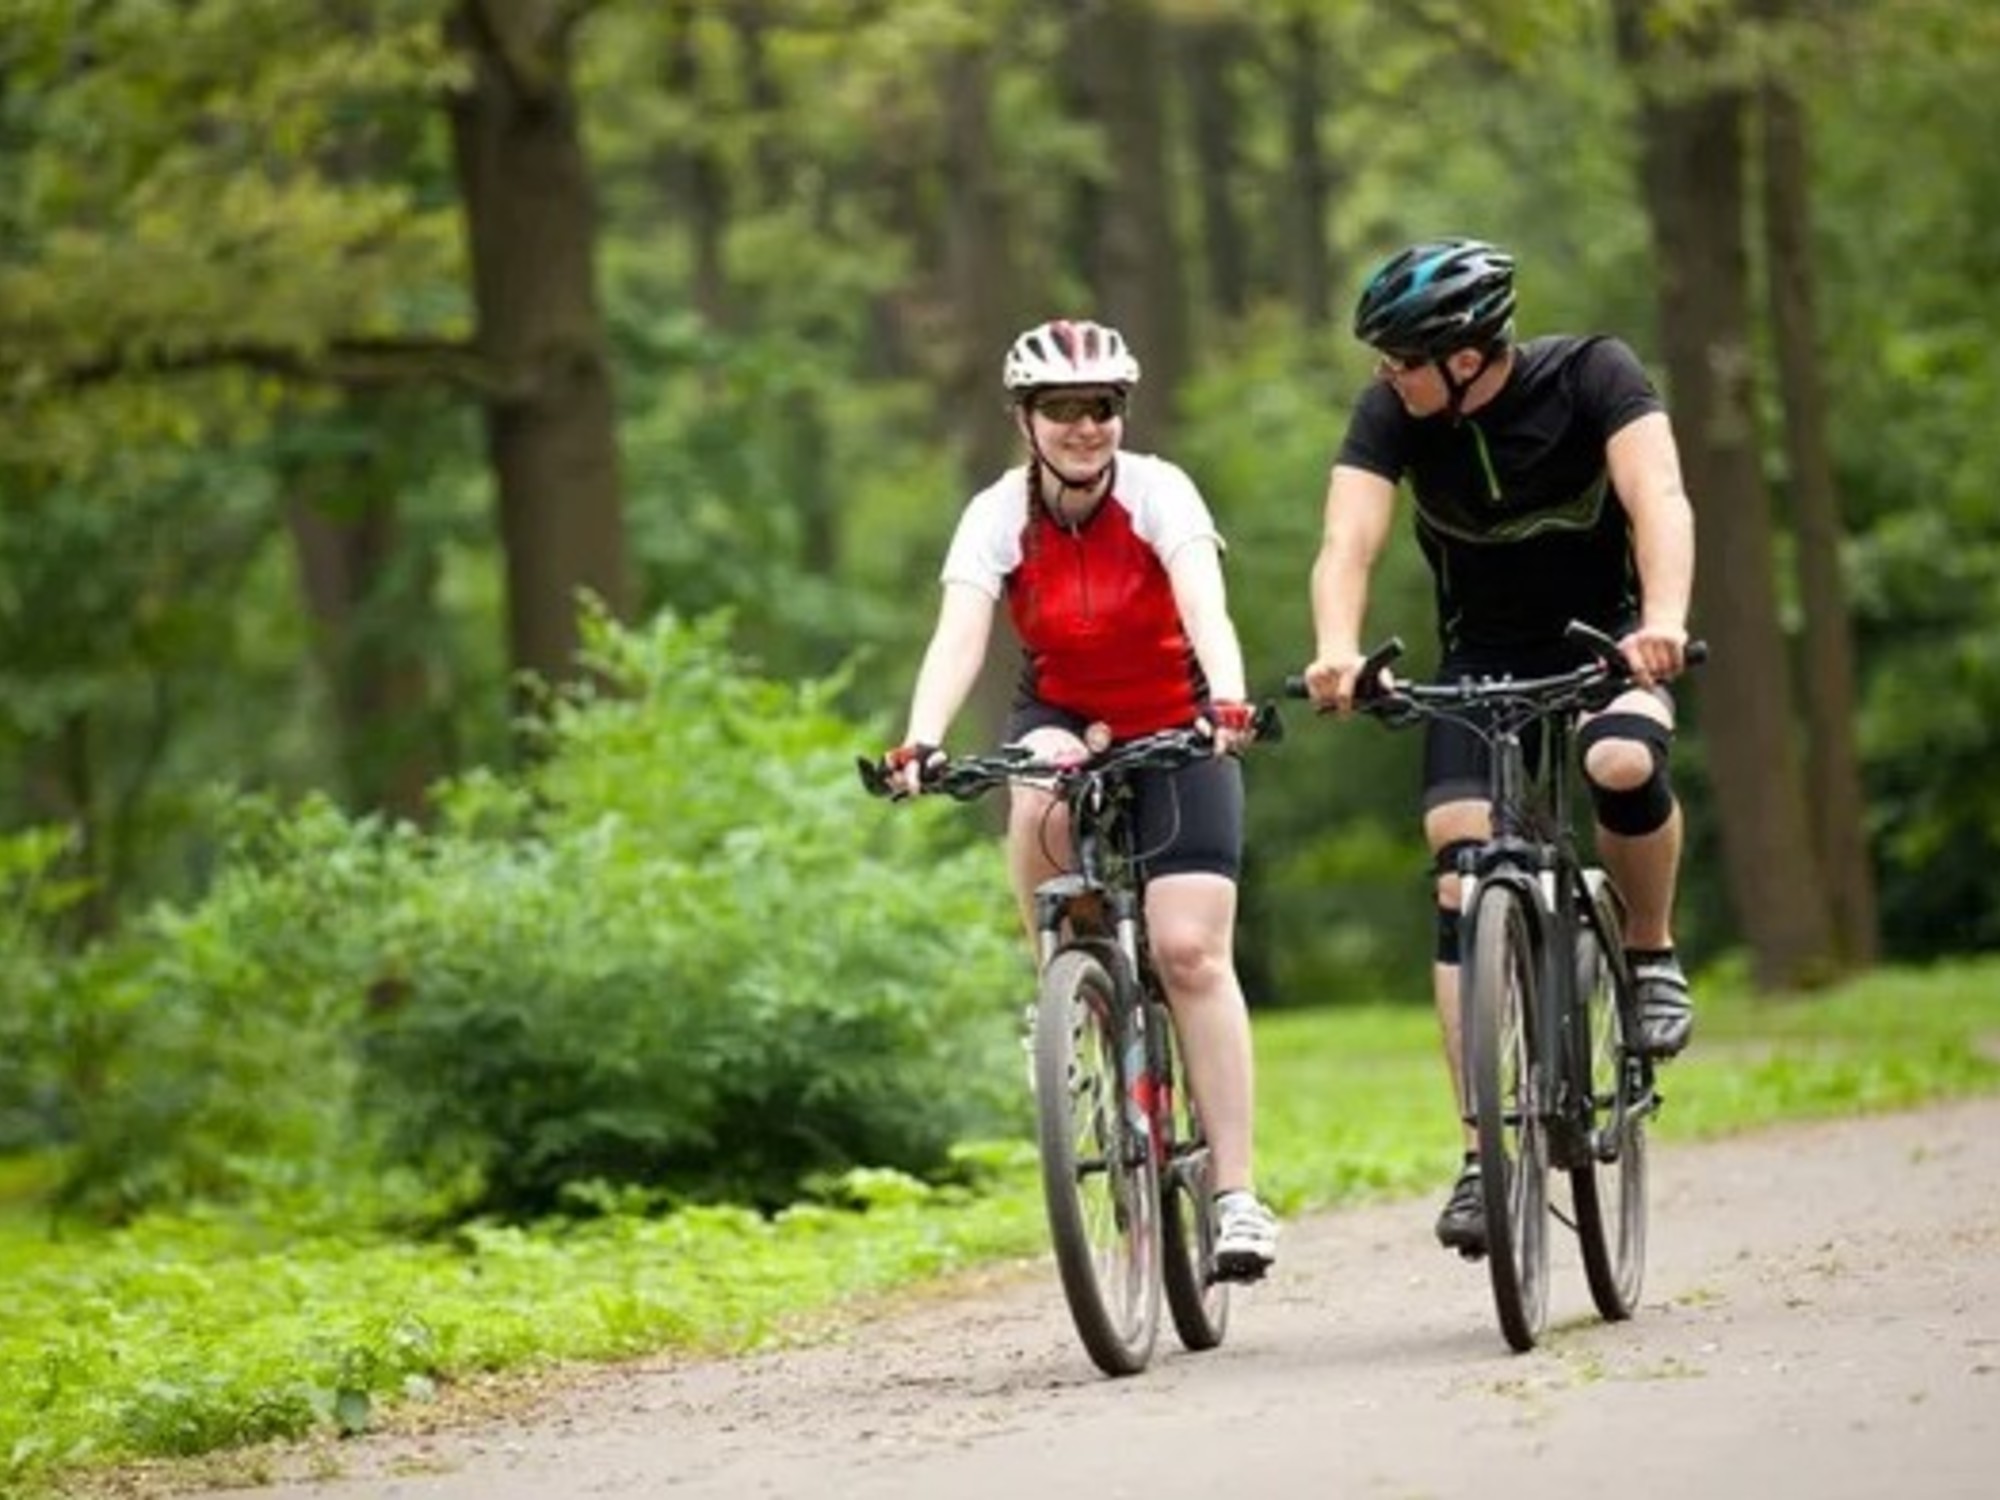 ¿Correr o andar en bicicleta?: cuál es el mejor ejercicio para perder peso